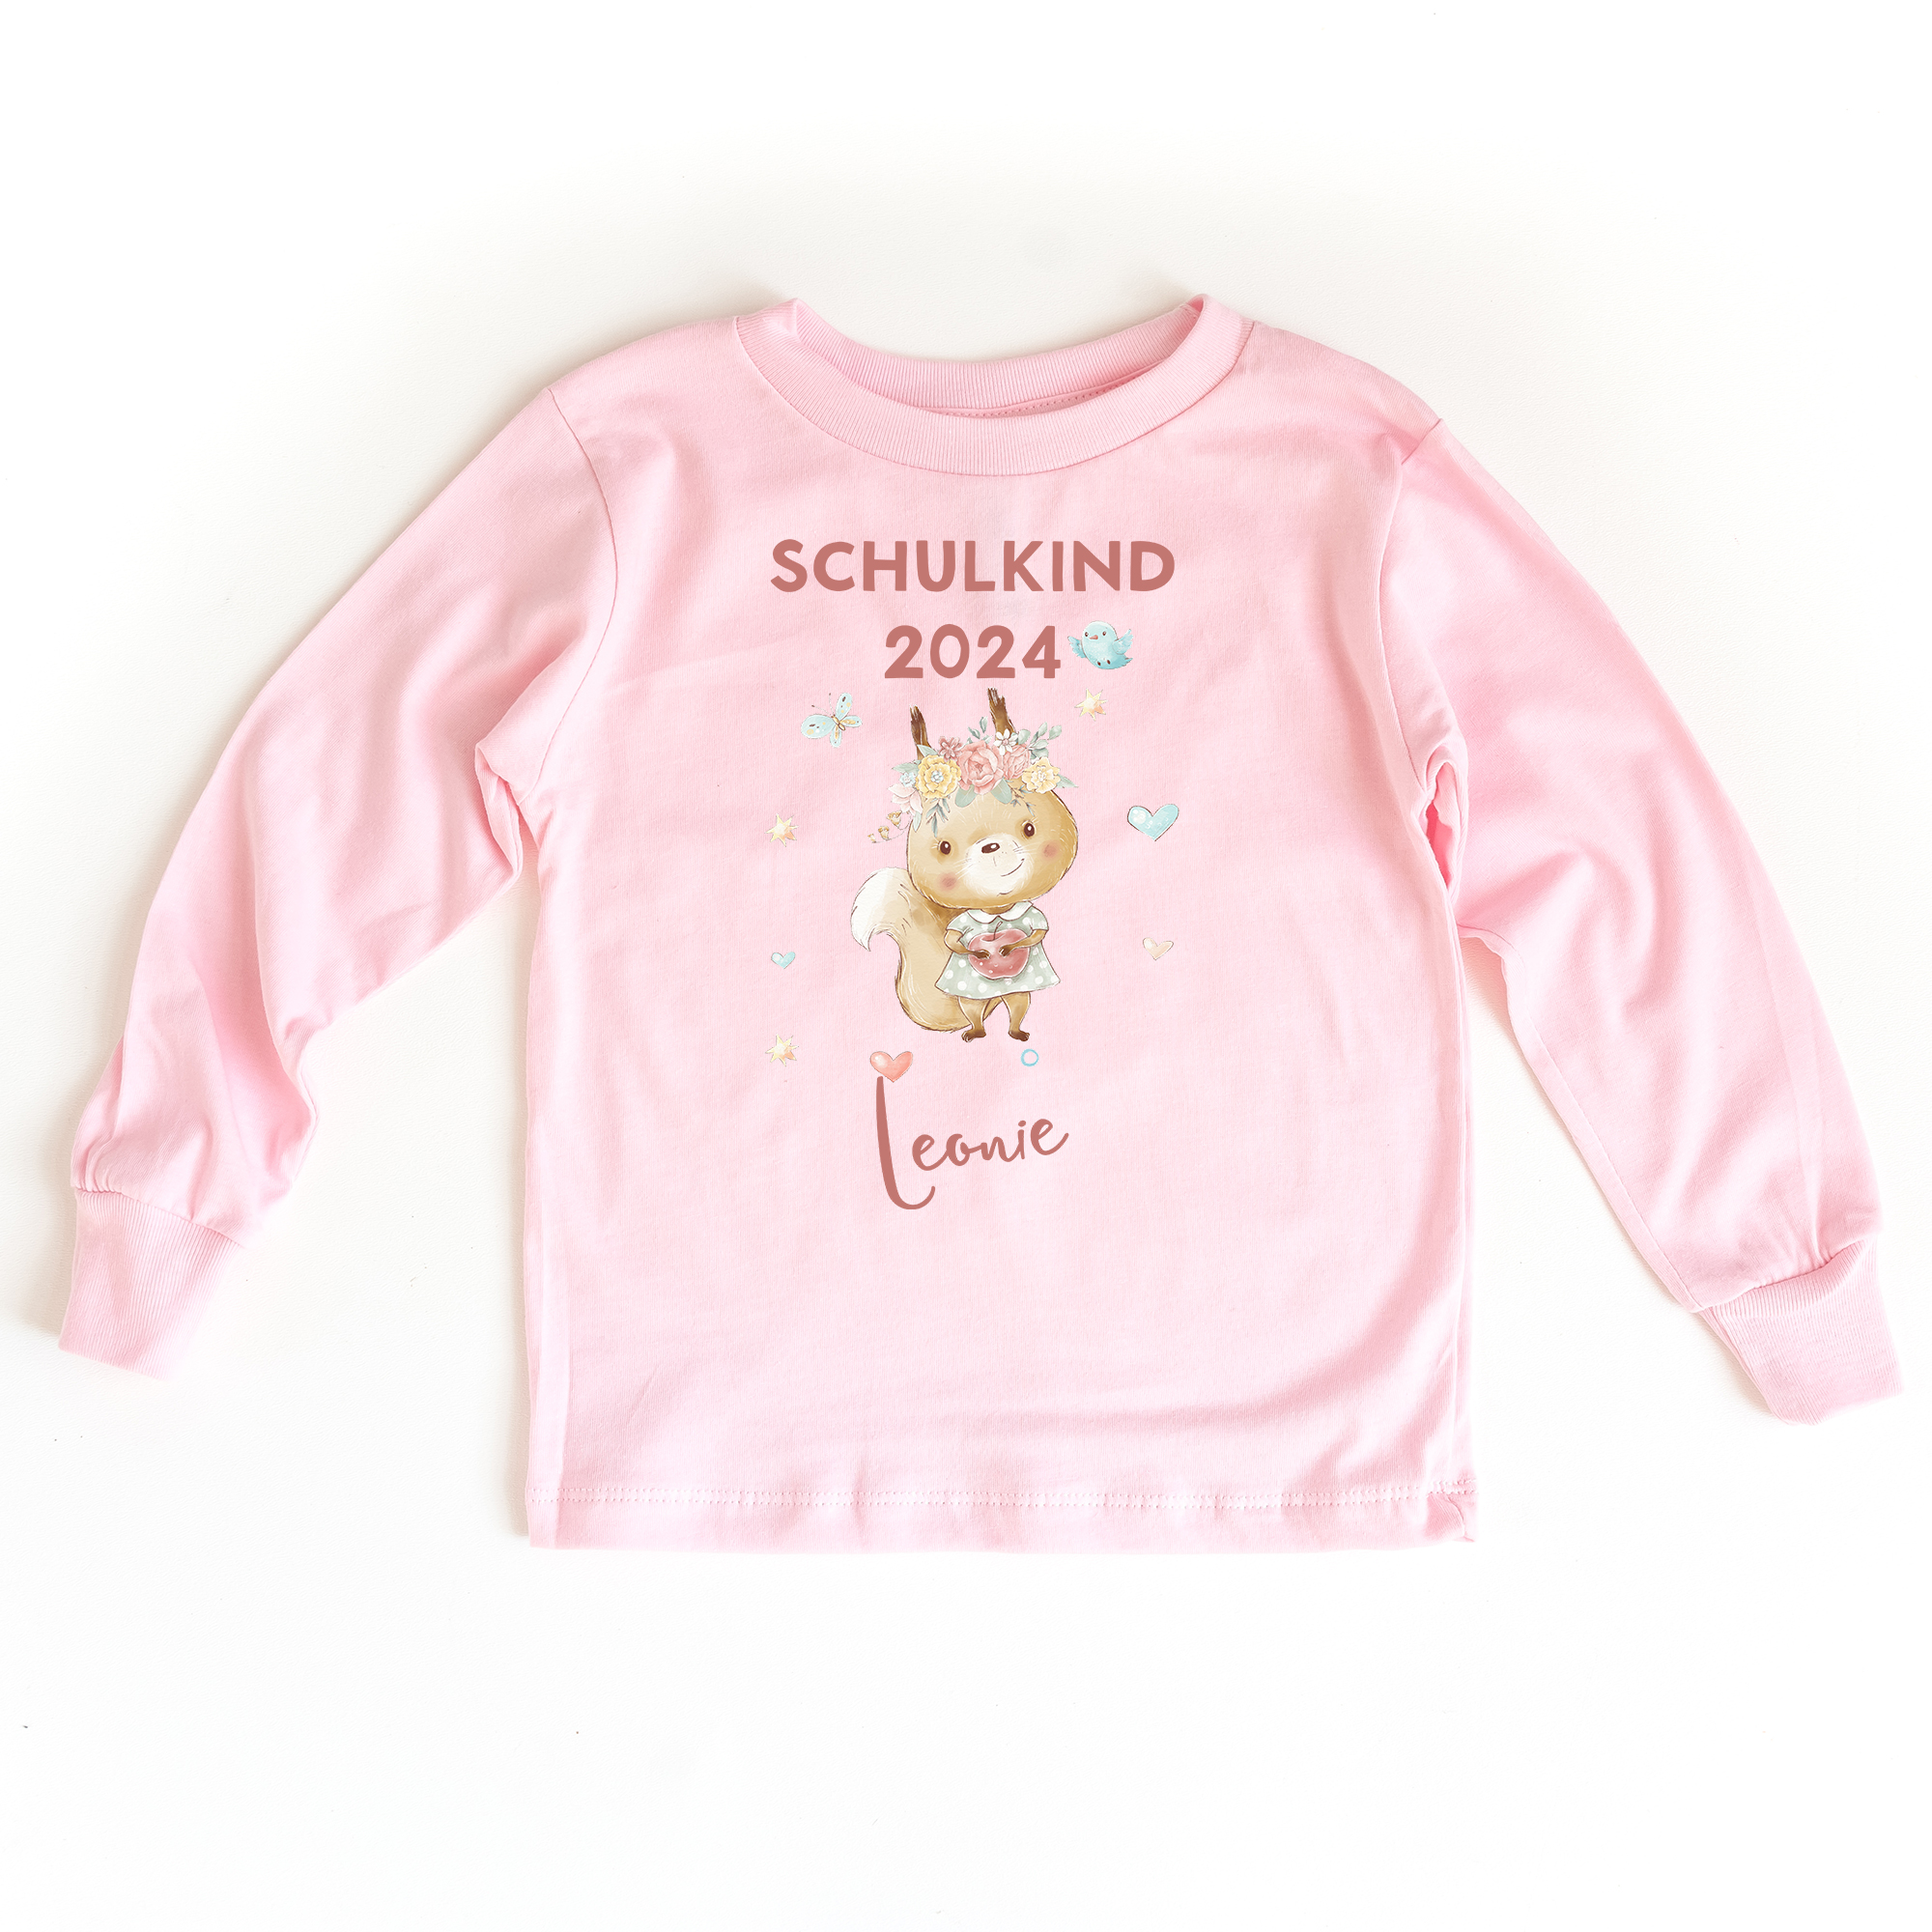 Sweatshirt zum Schulanfang in rosa mit Name und Motiv Eichhörnchen